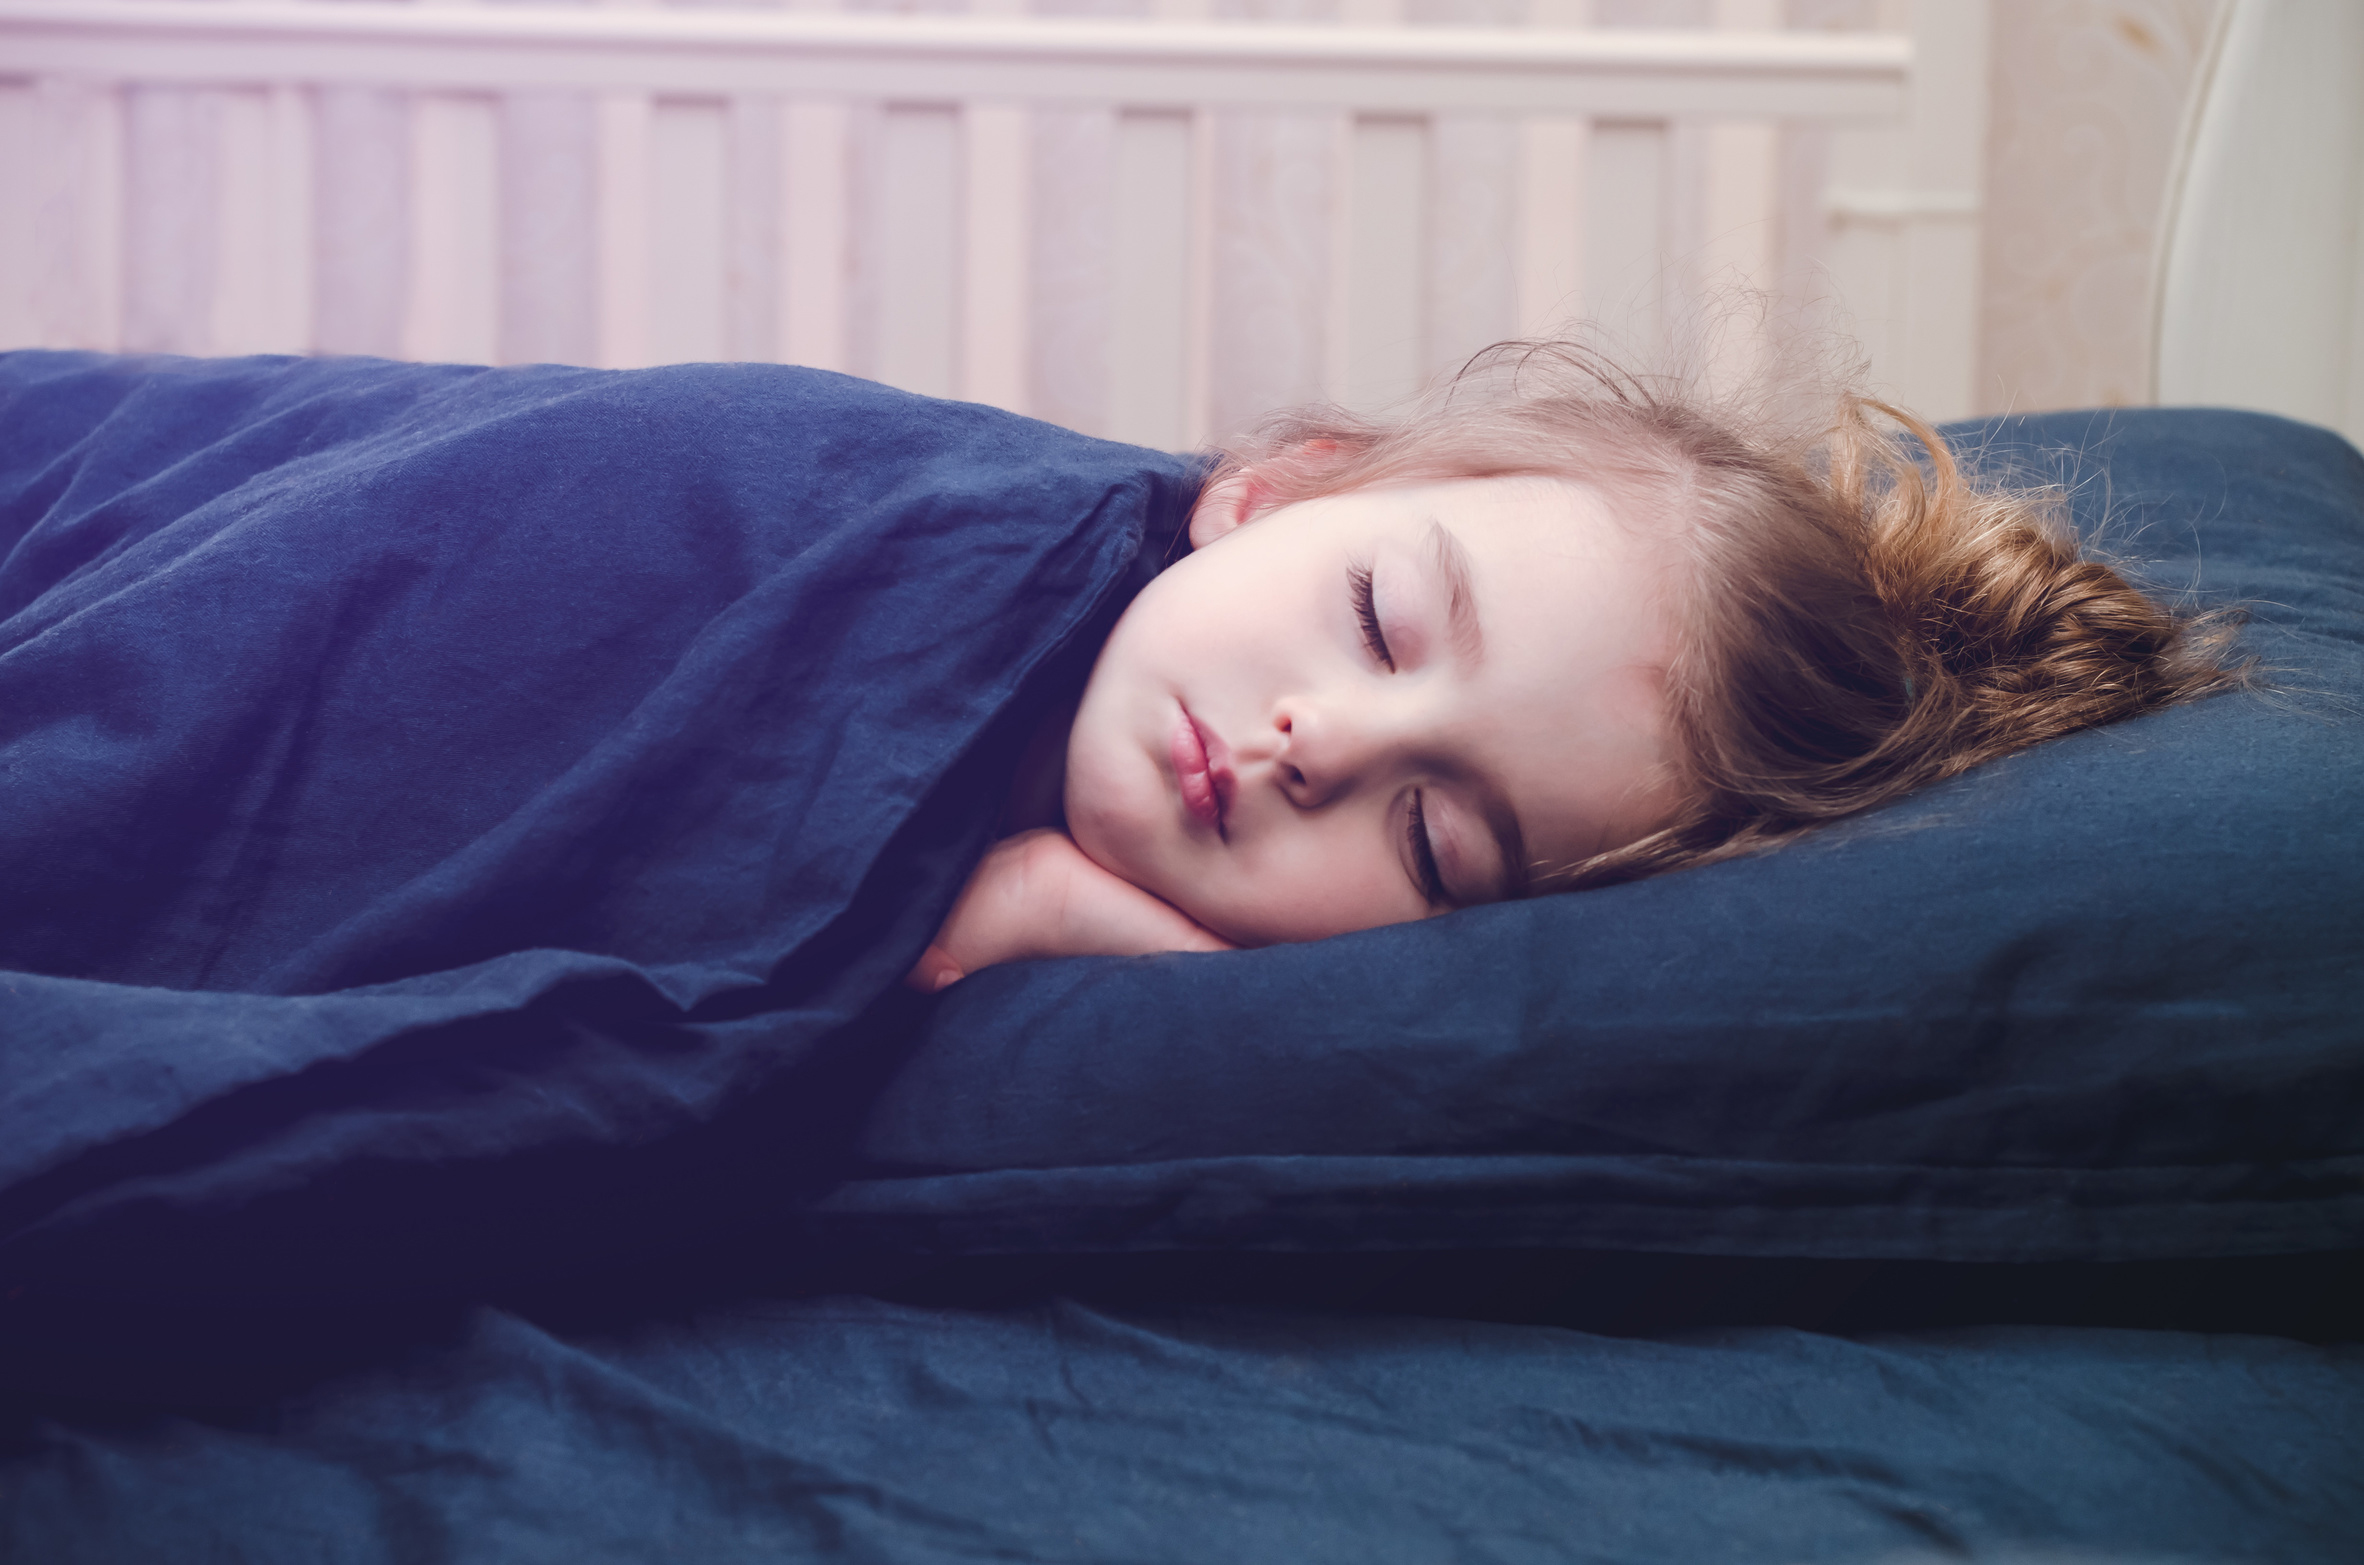 La privación del sueño puede resultar preocupante tanto adultos como para niños. Según estudios recientes, un tercio de los adultos no duermen lo suficiente. El sueño inadecuado representa un mayor riesgo de desarrollar enfermedades crónicas como: la obesidad, diabetes, hipertensión, enfermedades cardíacas, accidentes cerebrovasculares y la depresión. Con toda esta información, es importante saber cuánto debe dormir un niño según la edad. Los adultos de 18 a 60 años necesitan dormir al menos siete horas por noche para tener una salud óptima, y los adultos de hasta 64 años deben dormir de siete a nueve horas cada noche. Para los niños, no dormir lo suficiente puede ser particularmente problemático. Como sus cuerpos y mentes aún están en crecimiento, el sueño representa una parte crucial para un desarrollo saludable. Para un niño dormir lo necesario mejora la atención, el comportamiento, la salud emocional, mental y física, así como su capacidad de aprender y recordar. Por el contrario, cuando no duermen lo suficiente, sus cuerpos no son capaces de luchar contra las infecciones, cosa que es grave para los niños en edad escolar porque están continuamente expuestos a enfermedades contagiosas como los resfriados. La obesidad y los cambios de humor también están relacionados con la falta de sueño en los niños, y esos cambios de humor interfieren con la capacidad de concentración y el prestar atención. Conocer cuánto debe dormir un niño es especialmente importante para que los padres puedan tomar medidas y asegurarse de que sus niños estén durmiendo lo suficiente. Si tu hijo no está durmiendo lo suficiente porque pelea regularmente para irse a la cama, asegúrate de establecer buenas rutinas para dormir y habla con su médico si esas medidas aún no son suficientes. ¿Cuánto debe dormir un niño? A continuación te mostramos las siguientes recomendaciones de sueño para que tu niño tenga una salud óptima: Para bebés de 4-12 meses: de 12 a 16 horas, incluidas las siestas. Para niños de 1-2 años: de 11 a 14 horas, incluidas las siestas. Para niños de 3-5 años: de 10 a 13 horas, incluidas las siestas. Para niños de 6-12 años: de 9 a 12 horas. Para niños de 13-18 años: de 8 a 10 horas. Si tus hijos no están durmiendo lo suficiente, no te preocupes. Es tiempo de tomar medidas para que te asegures que duerman lo que realmente necesitan. Establece una buena rutina para dormir Desarrollar una buena rutina para irse a la cama, como un baño, leer un cuento, música suave y luces tenues, pueden relajar a los niños de tal manera que puedan conciliar el sueño fácilmente. Ten en cuenta que entre las señales de que tu hijo no está durmiendo lo suficiente están: los problemas para mantenerse despierto en la escuela, irritabilidad constante, cambios de humor y problemas para despertarse por la mañana. Mantén sus habitaciones sin pantalla Para los niños que no duermen lo suficiente, el tiempo de pantalla es un factor creciente. La tv, redes sociales y los mensajes de texto dificultan la capacidad de los niños para ir a dormir. No permitas que en las habitaciones de los niños haya un televisor, teléfono celular, tableta o computadora. El mantener los teléfonos fuera de la habitación también le permite a los padres monitorear mejor a sus hijos sobre como usan el teléfono e intervenir antes de surjan problemas en la vida de los niños, como el acoso cibernético o el uso inapropiado. Mantente al tanto de la tarea Enseña a los niños a cómo administrar sus tareas. Hoy día los niños reciben las tareas que las generaciones anteriores, incluso los grados más jóvenes. Ayuda a tus hijos para que aprendan a manejar bien las tareas. No esperes hasta el último momento para realizar un proyecto, sobre todo si puede tardar varios días en terminarlo. Lo mejor es enseñarlos hacer la tarea poco después de llegar a casa, en lugar de hacerlo antes de irse a la cama. Así estará menos estresado antes de irse a dormir. Si tu hijo aún lucha para irse a dormir, revisa las razones por las cuales le cuesta dormir lo suficiente, como por ejemplo, querer estar despierto en compañía de sus hermanos mayores, está demasiado cansado o incluso ansioso por algo.